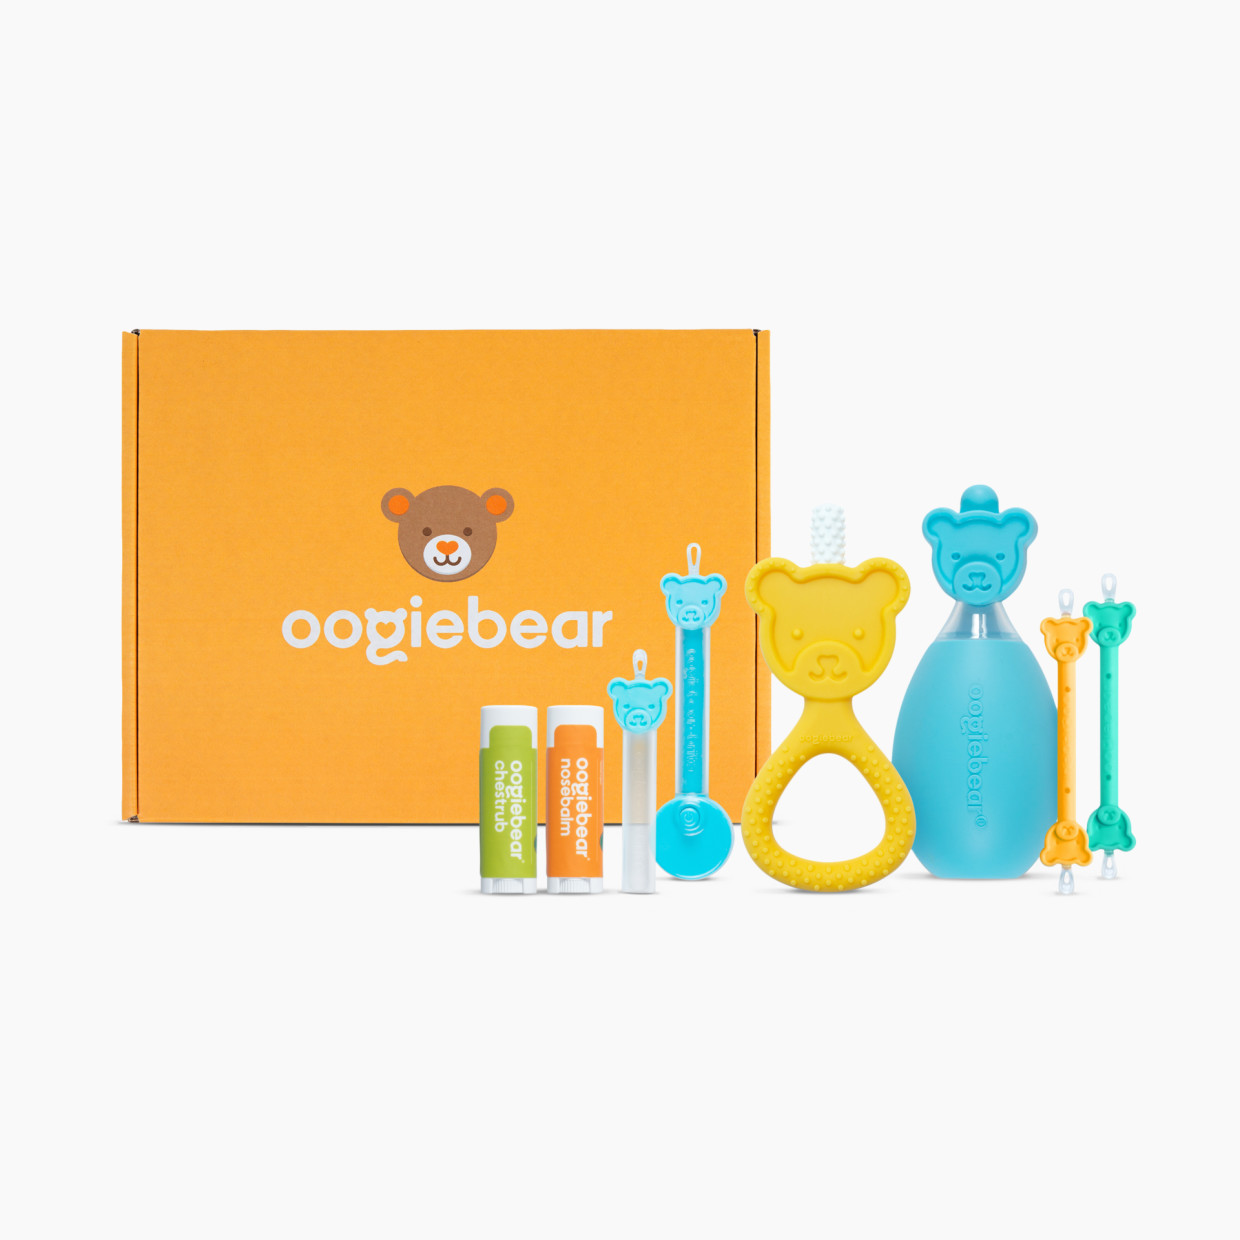 Oogiebear New Parent Gift Box.